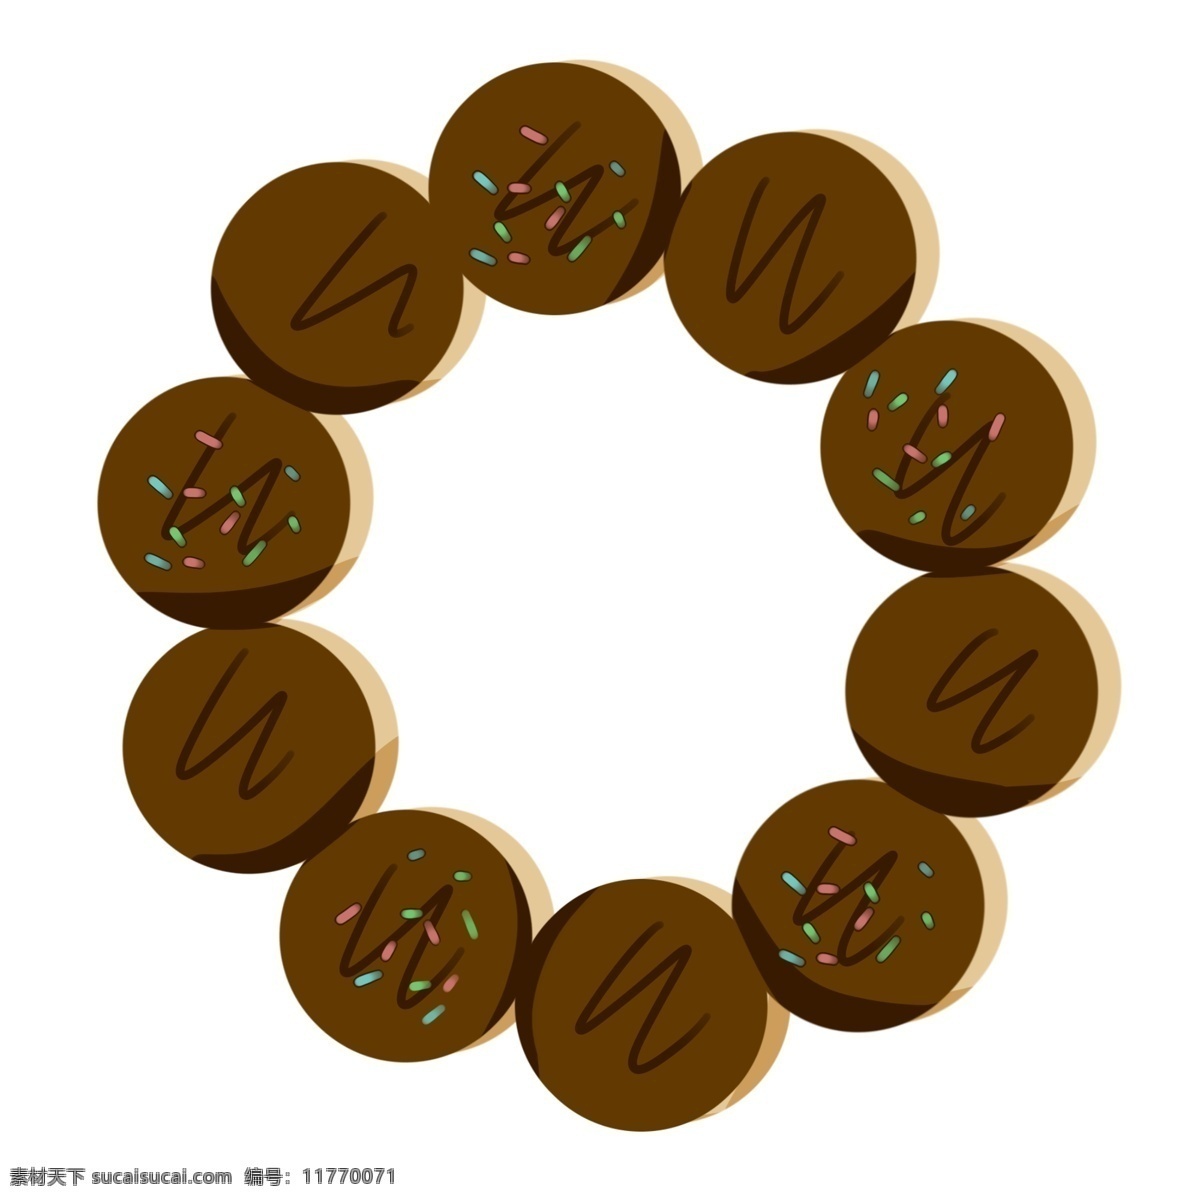 圆形 巧克力 甜甜 圈 插图 巧克力甜甜圈 圆形甜甜圈 黑色甜甜圈 甜甜圈插图 卡通设计 甜品甜甜圈 甜甜圈设计